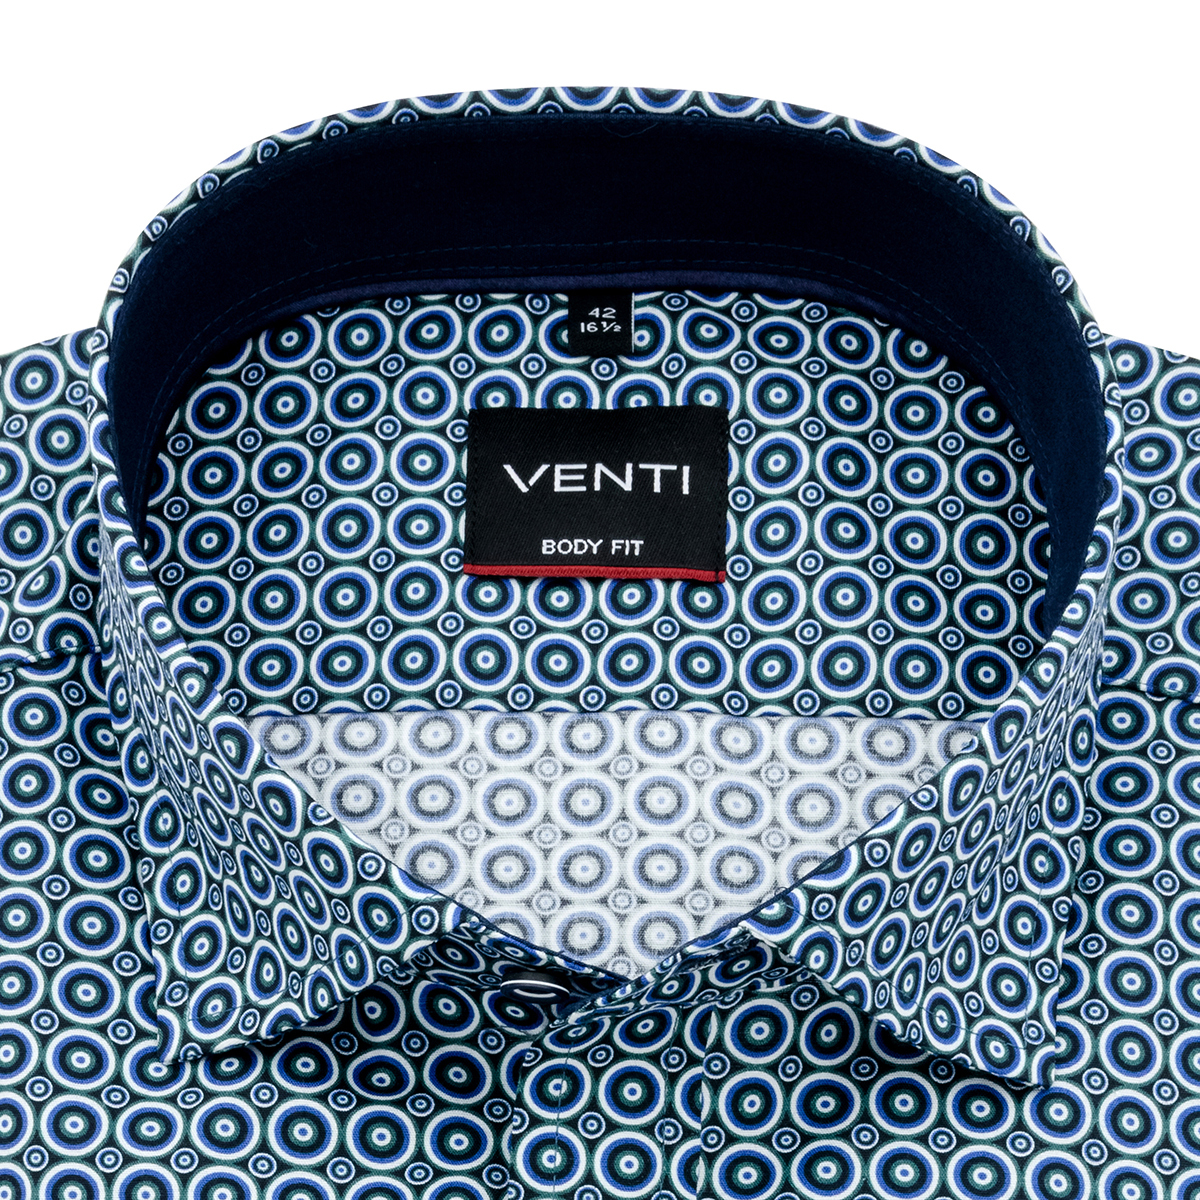 Рубашка Venti Body Fit 193280300-300 с геометрическим принтом в сине-зеленой гамме